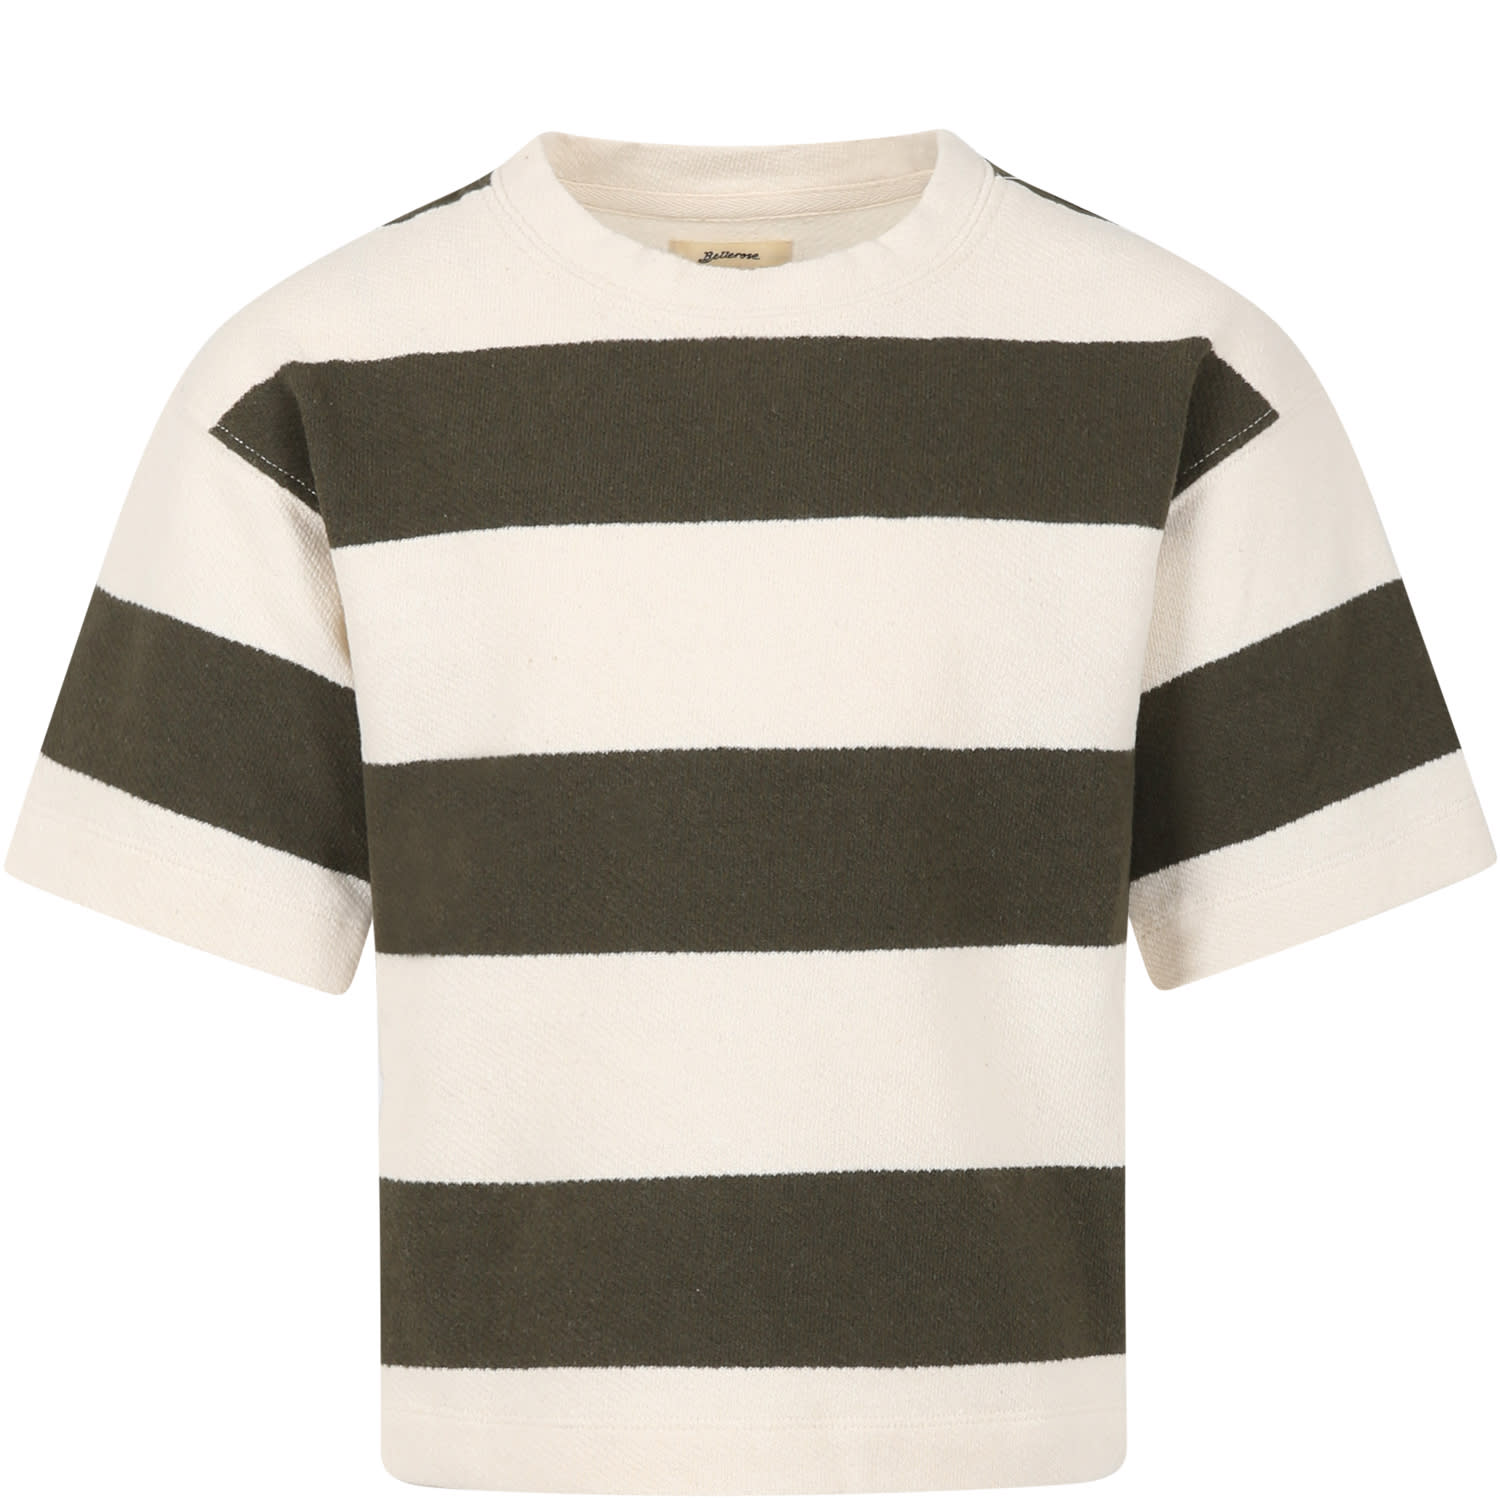 Bellerose Kids' Multicolor Striped T-shirt For Boy